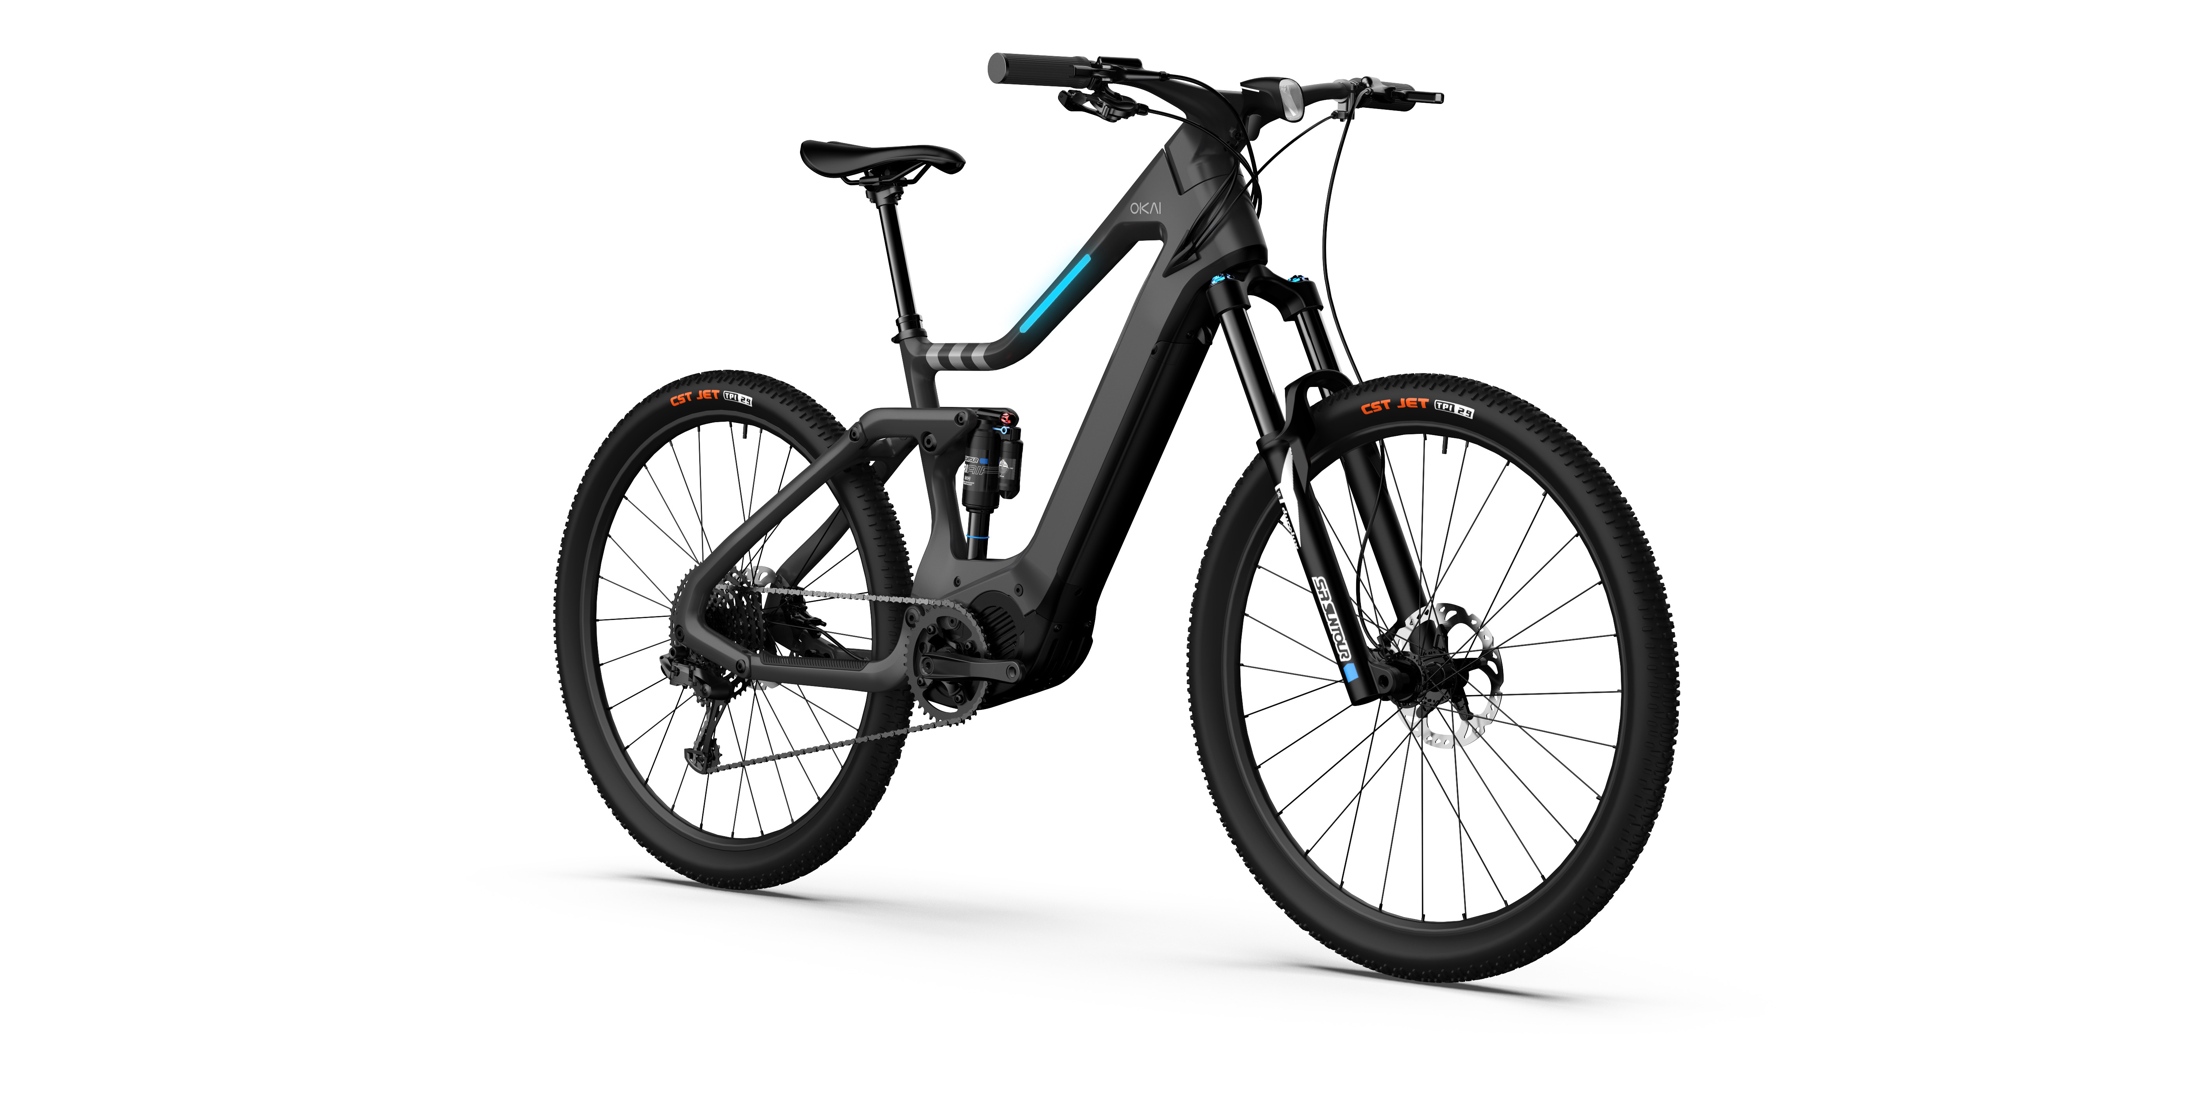 OKAI EB20 electric mountain bike unveils new touchscreen, torque 